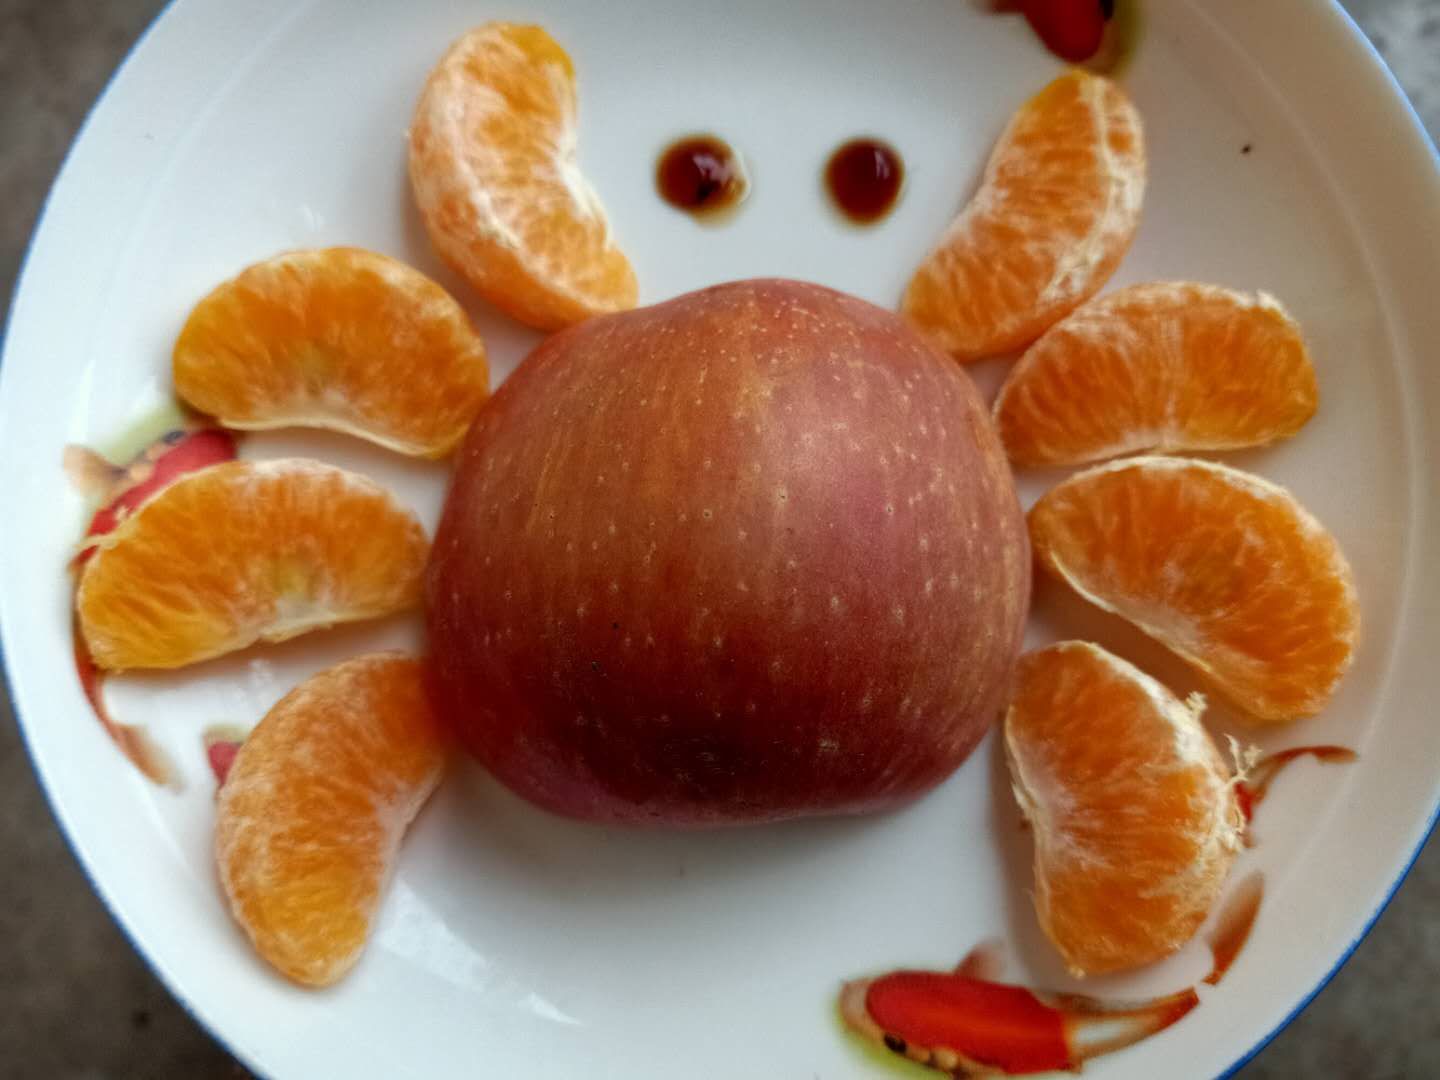 既是水果拼盘,则不得不说说水果,柑橘和苹果算是这个季节常见的水果